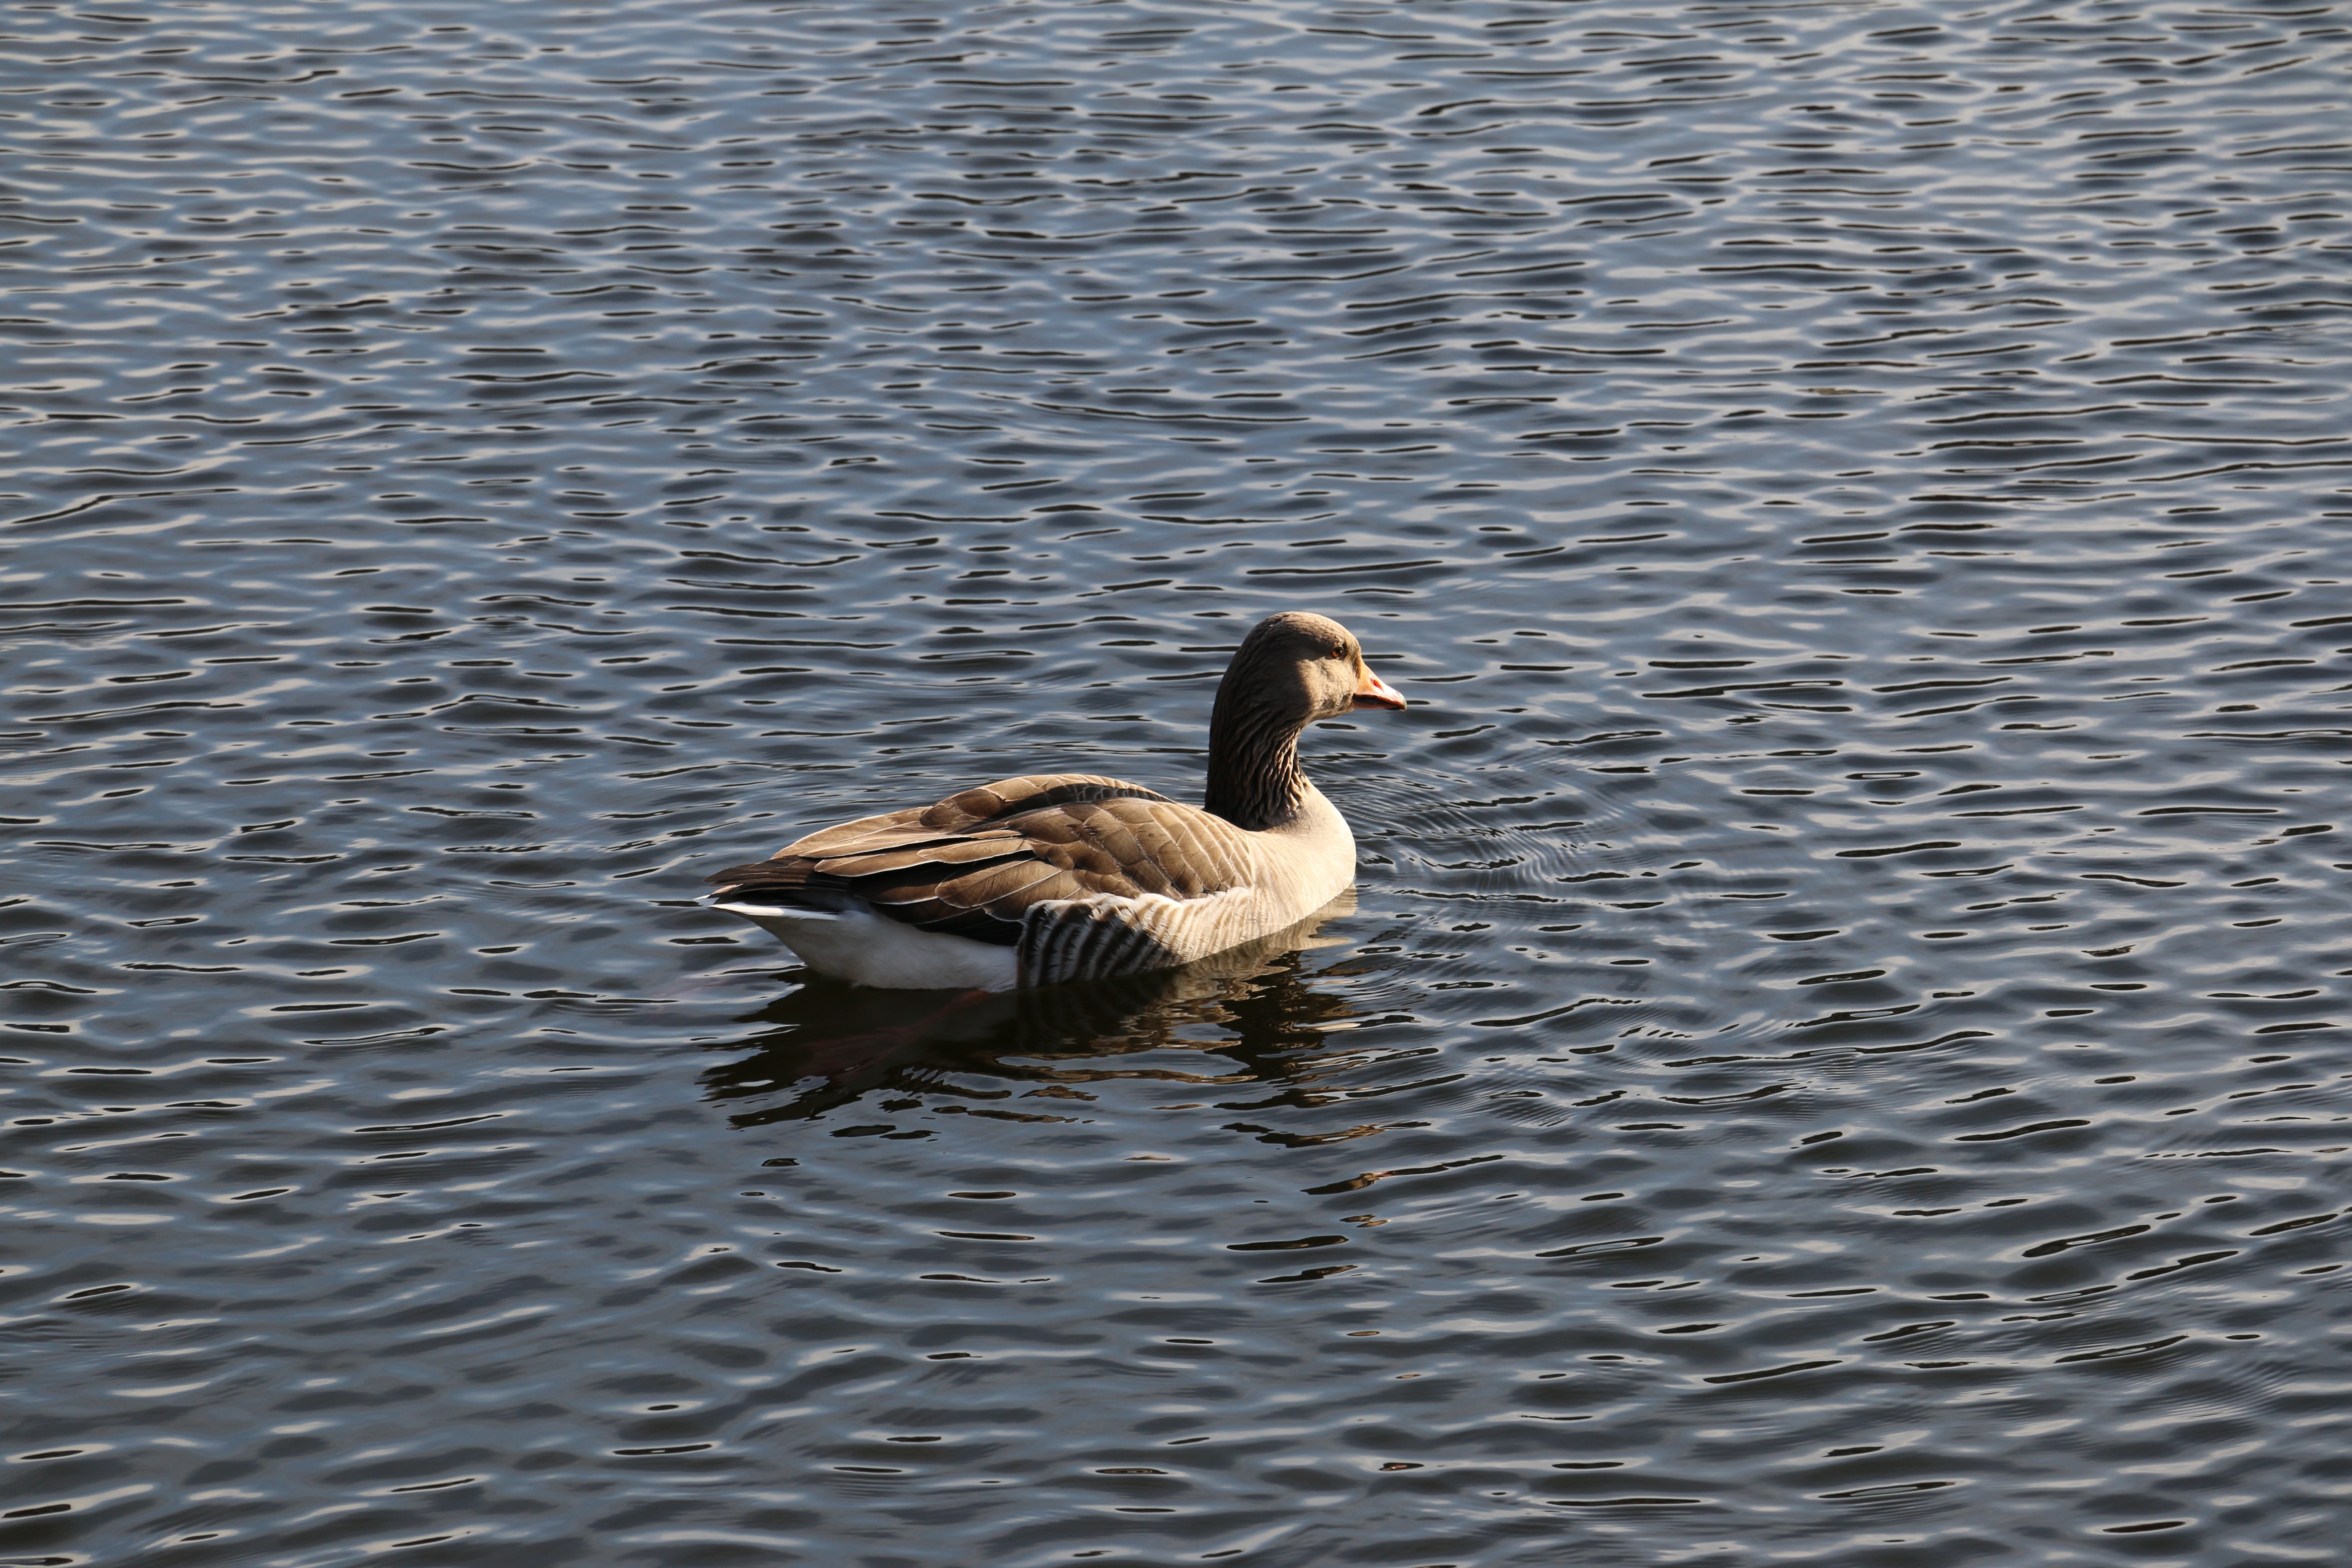 female mallard duck on rippling body of water